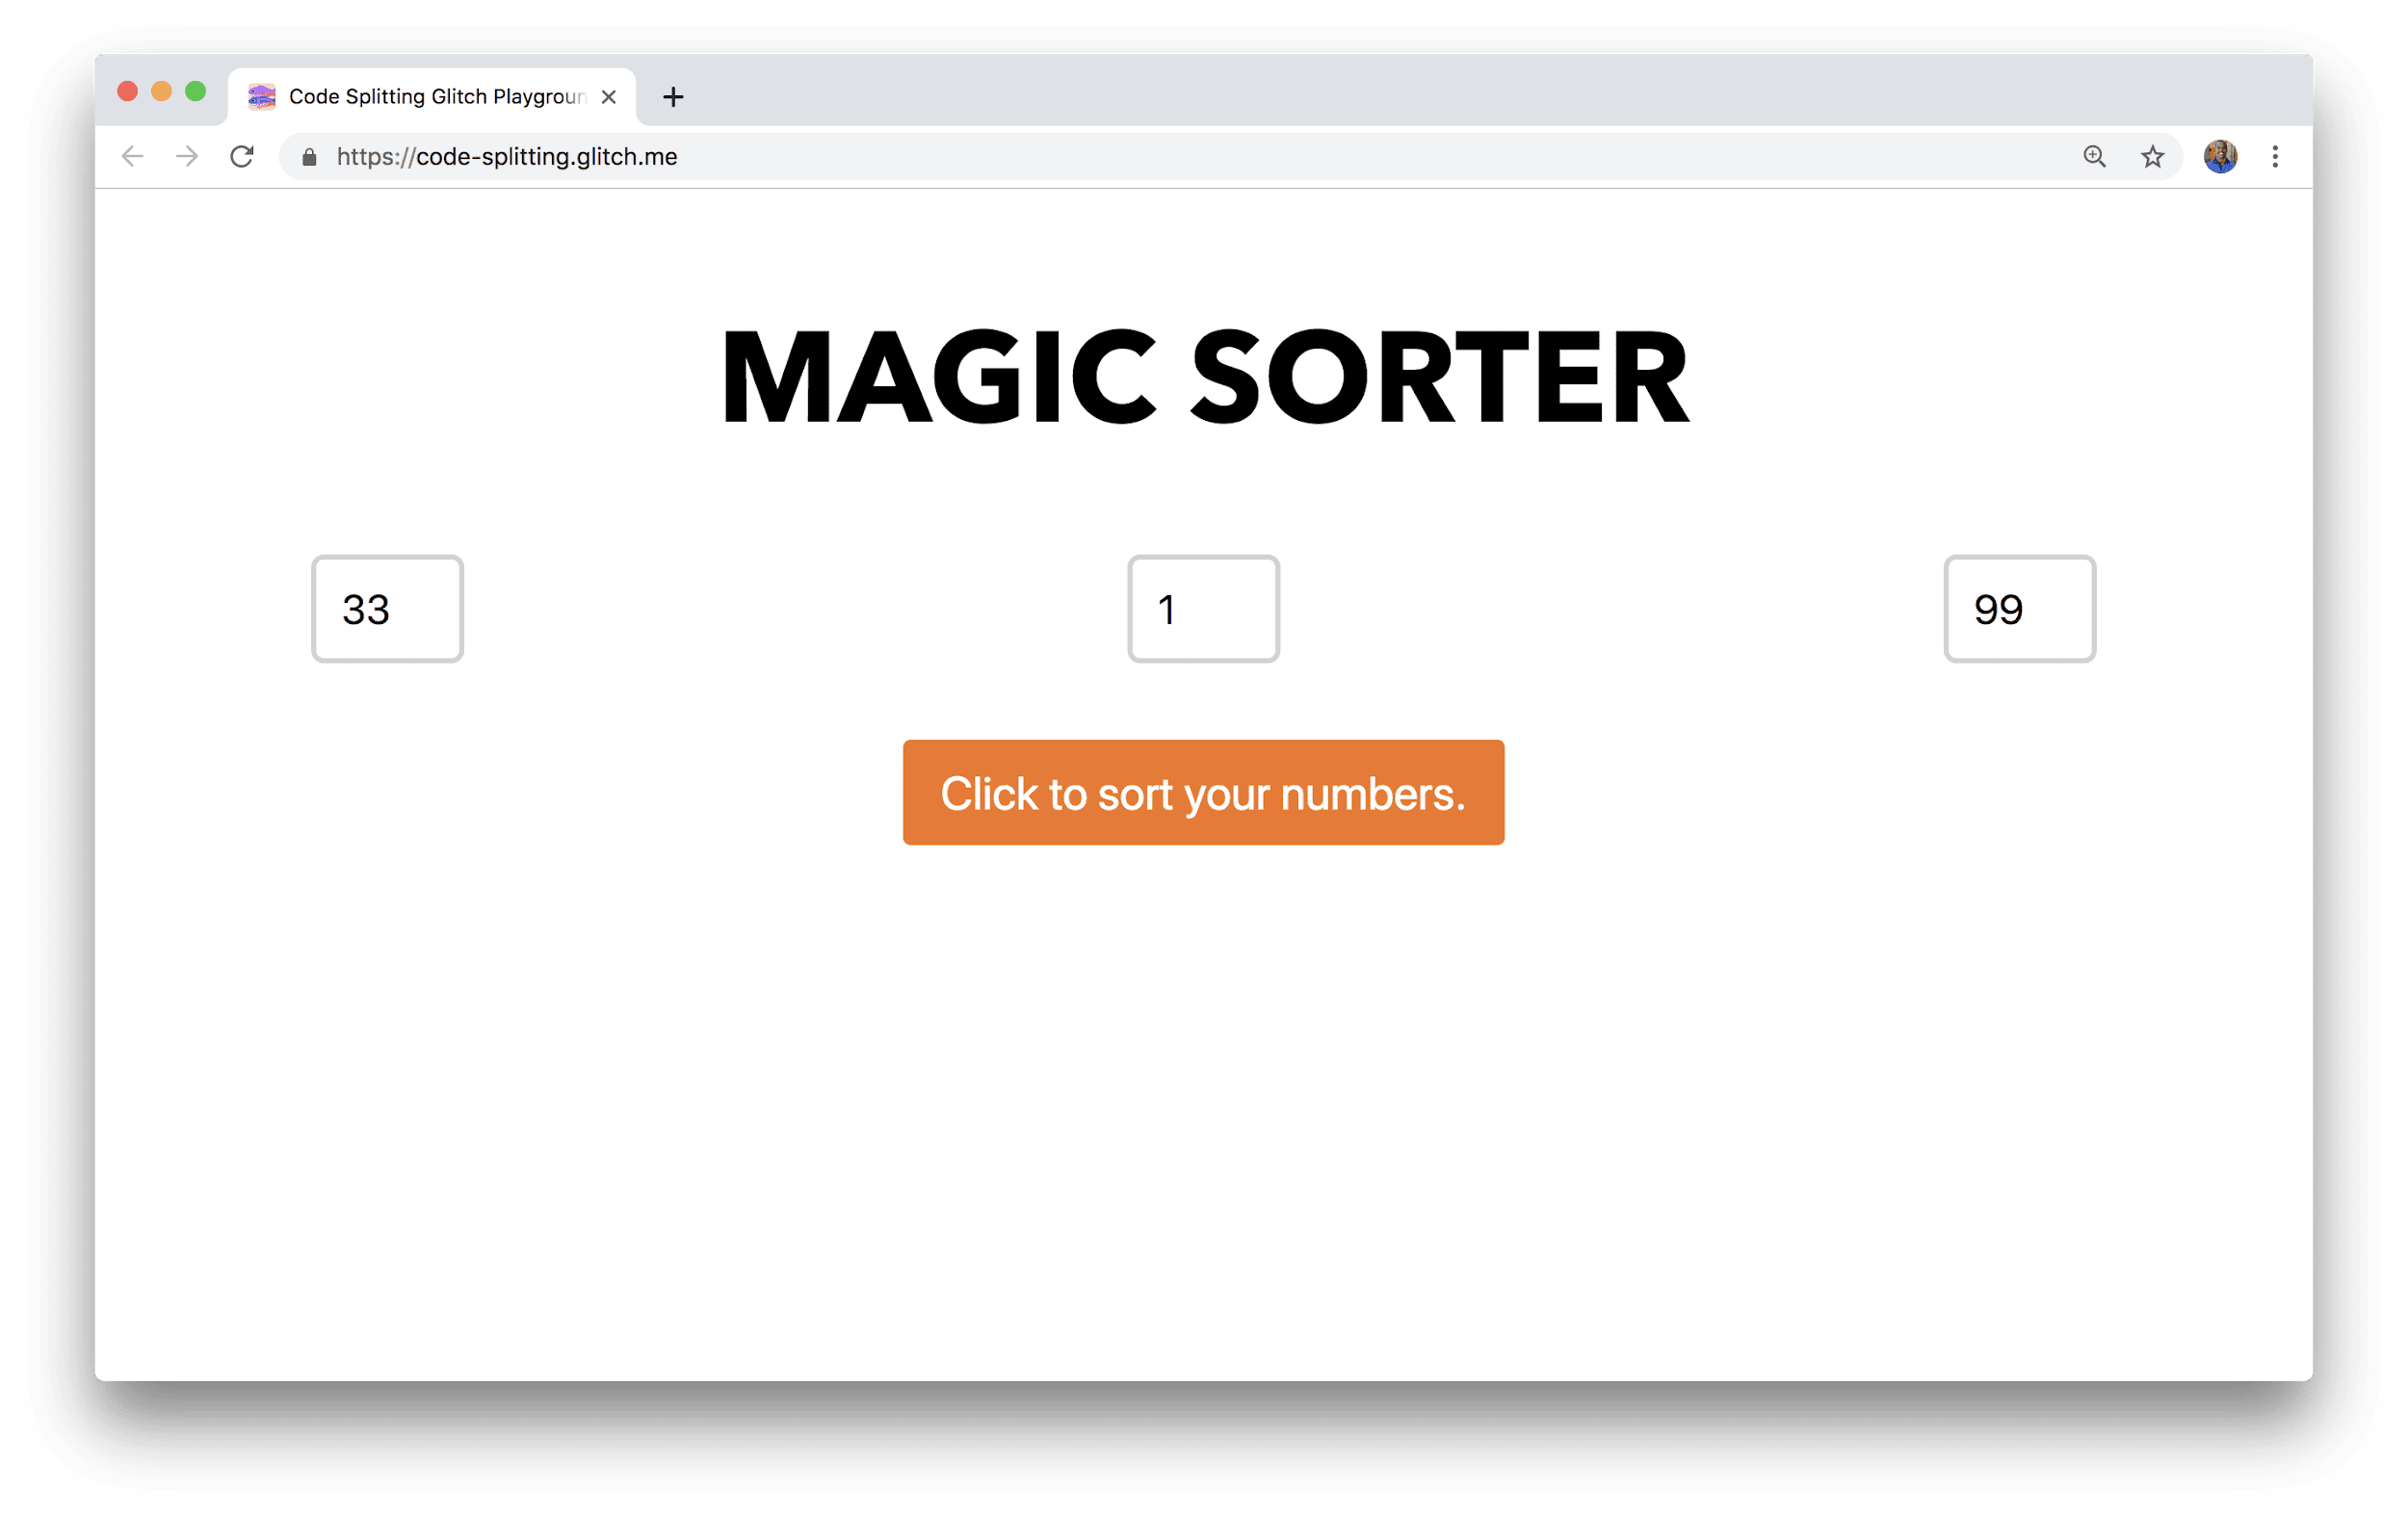 ब्राउज़र विंडो की इमेज, जिसमें मैजिक सॉर्टर नाम का एक ऐप्लिकेशन दिख रहा है. इसमें नंबर डालने और क्रम से लगाने के बटन के लिए तीन फ़ील्ड हैं.